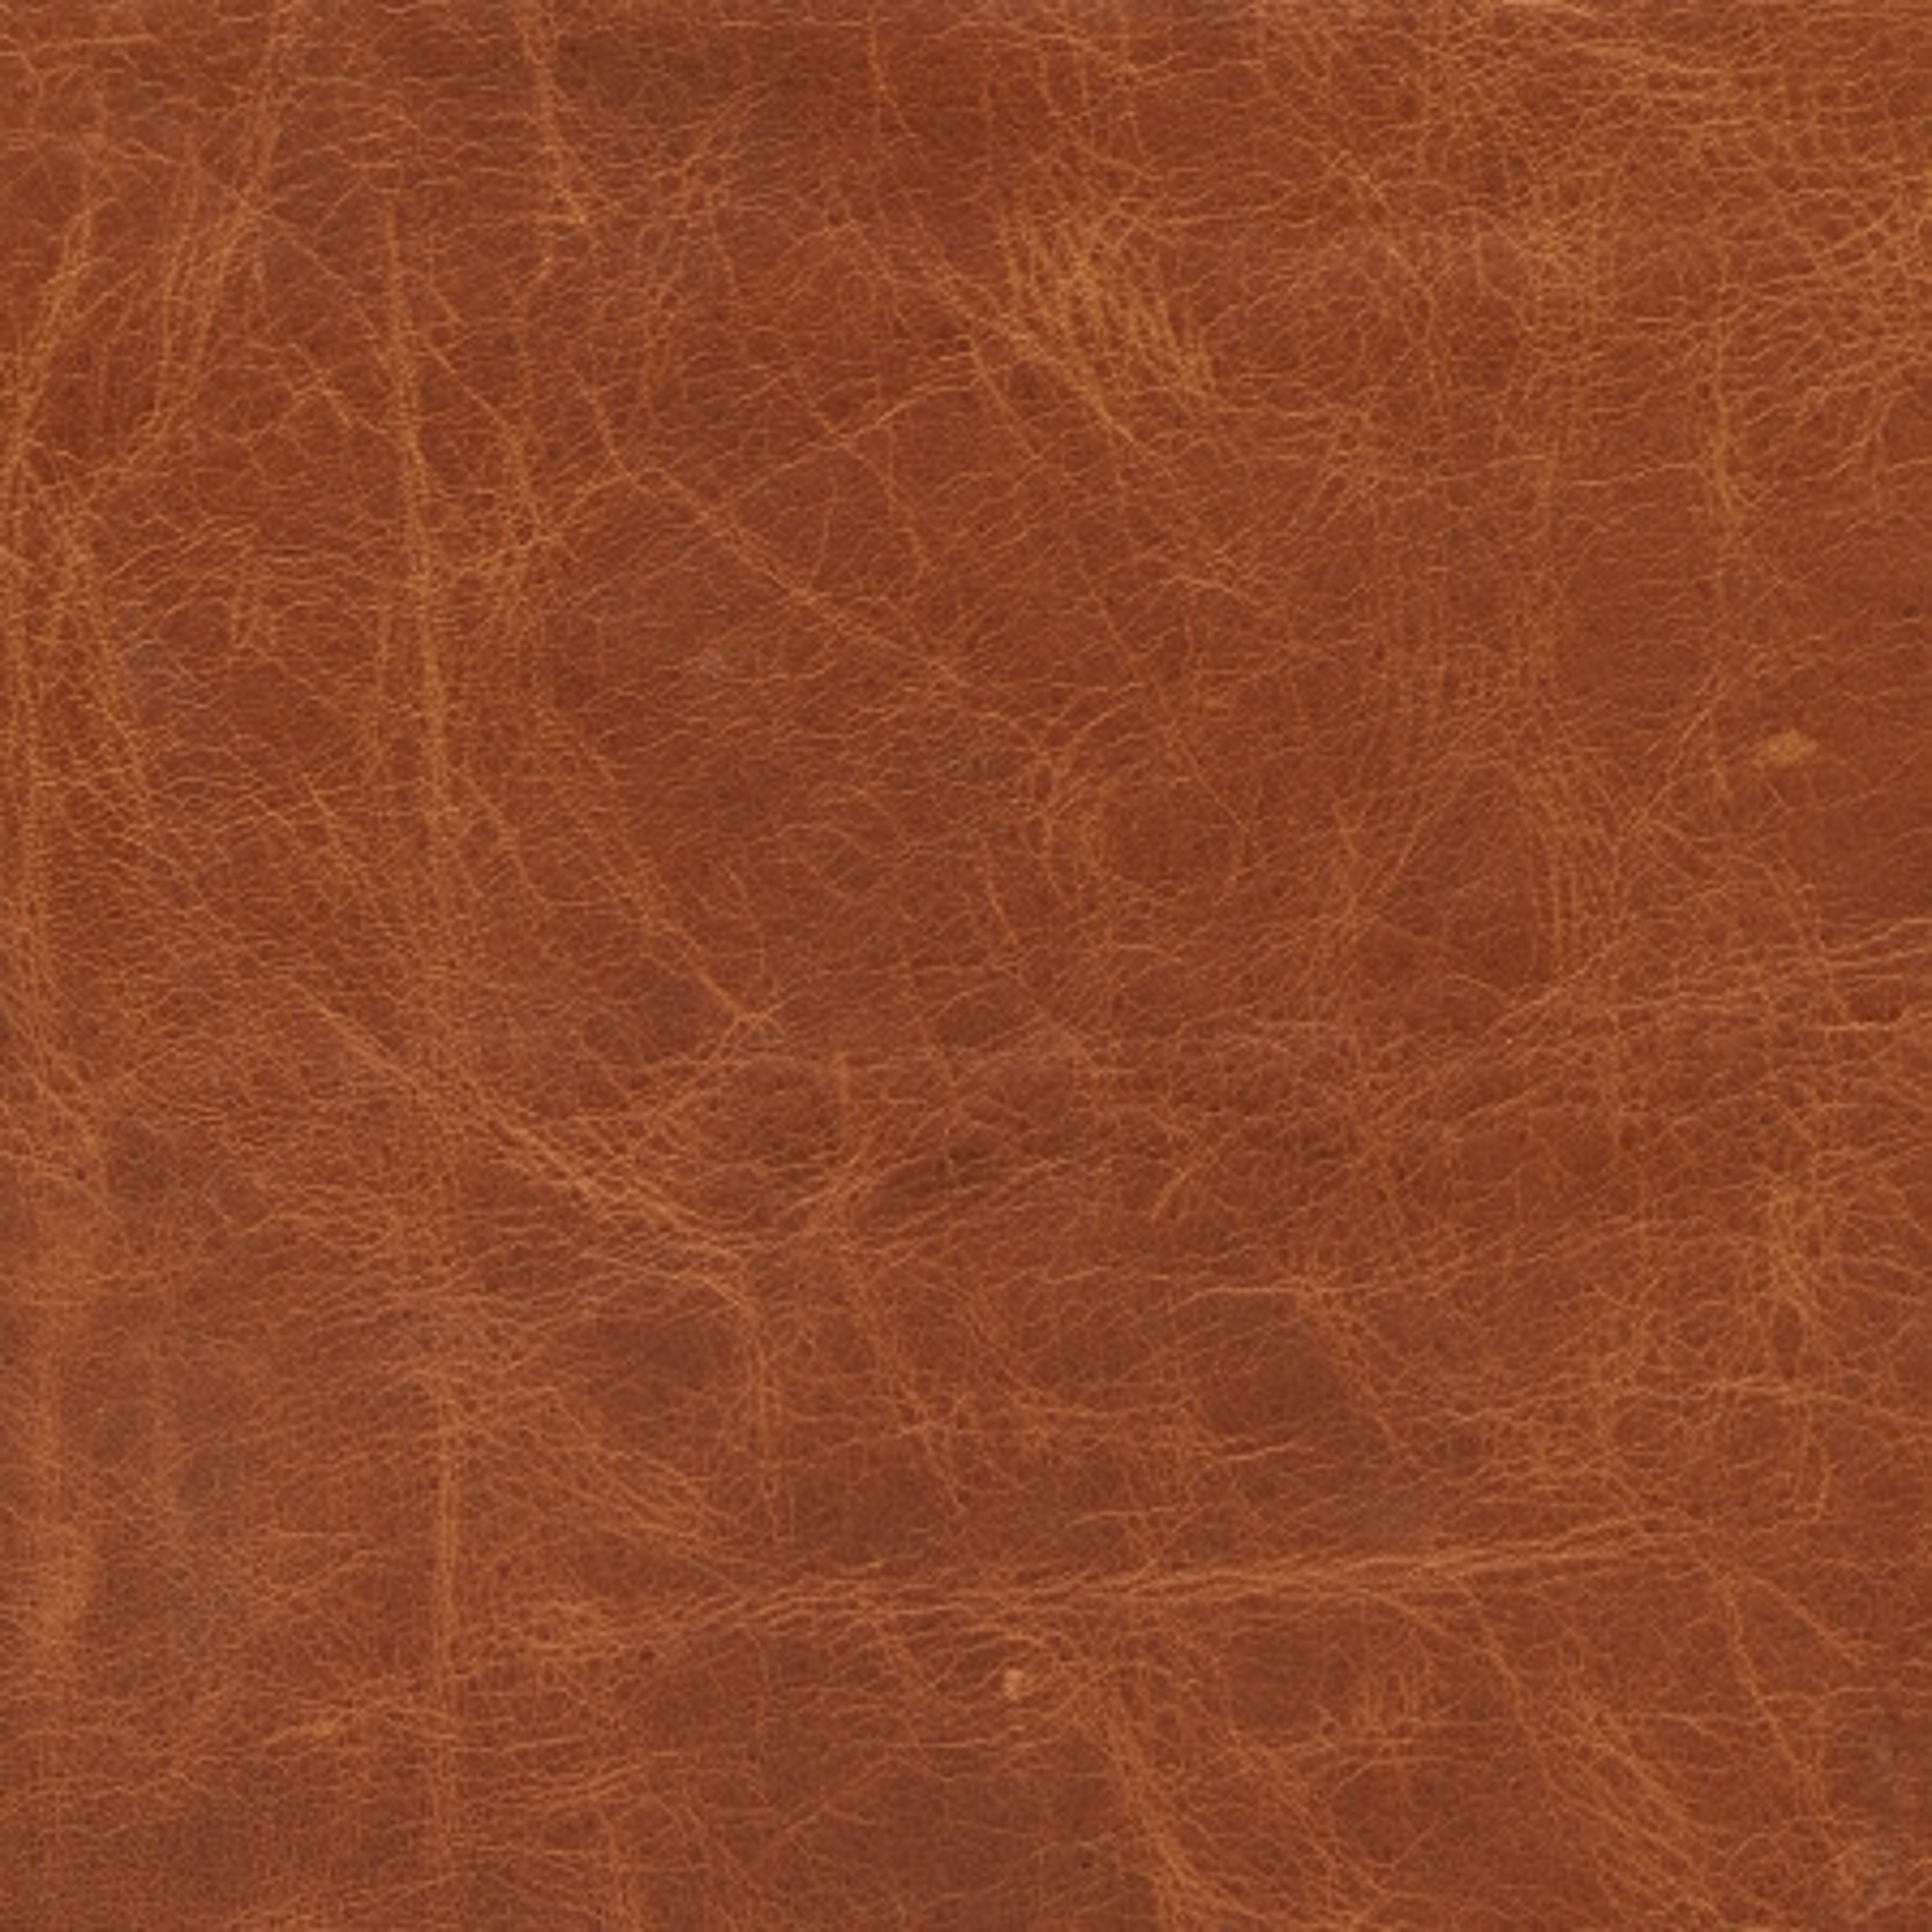 Detailný pohľad na materiál koža v hnedej farbe.